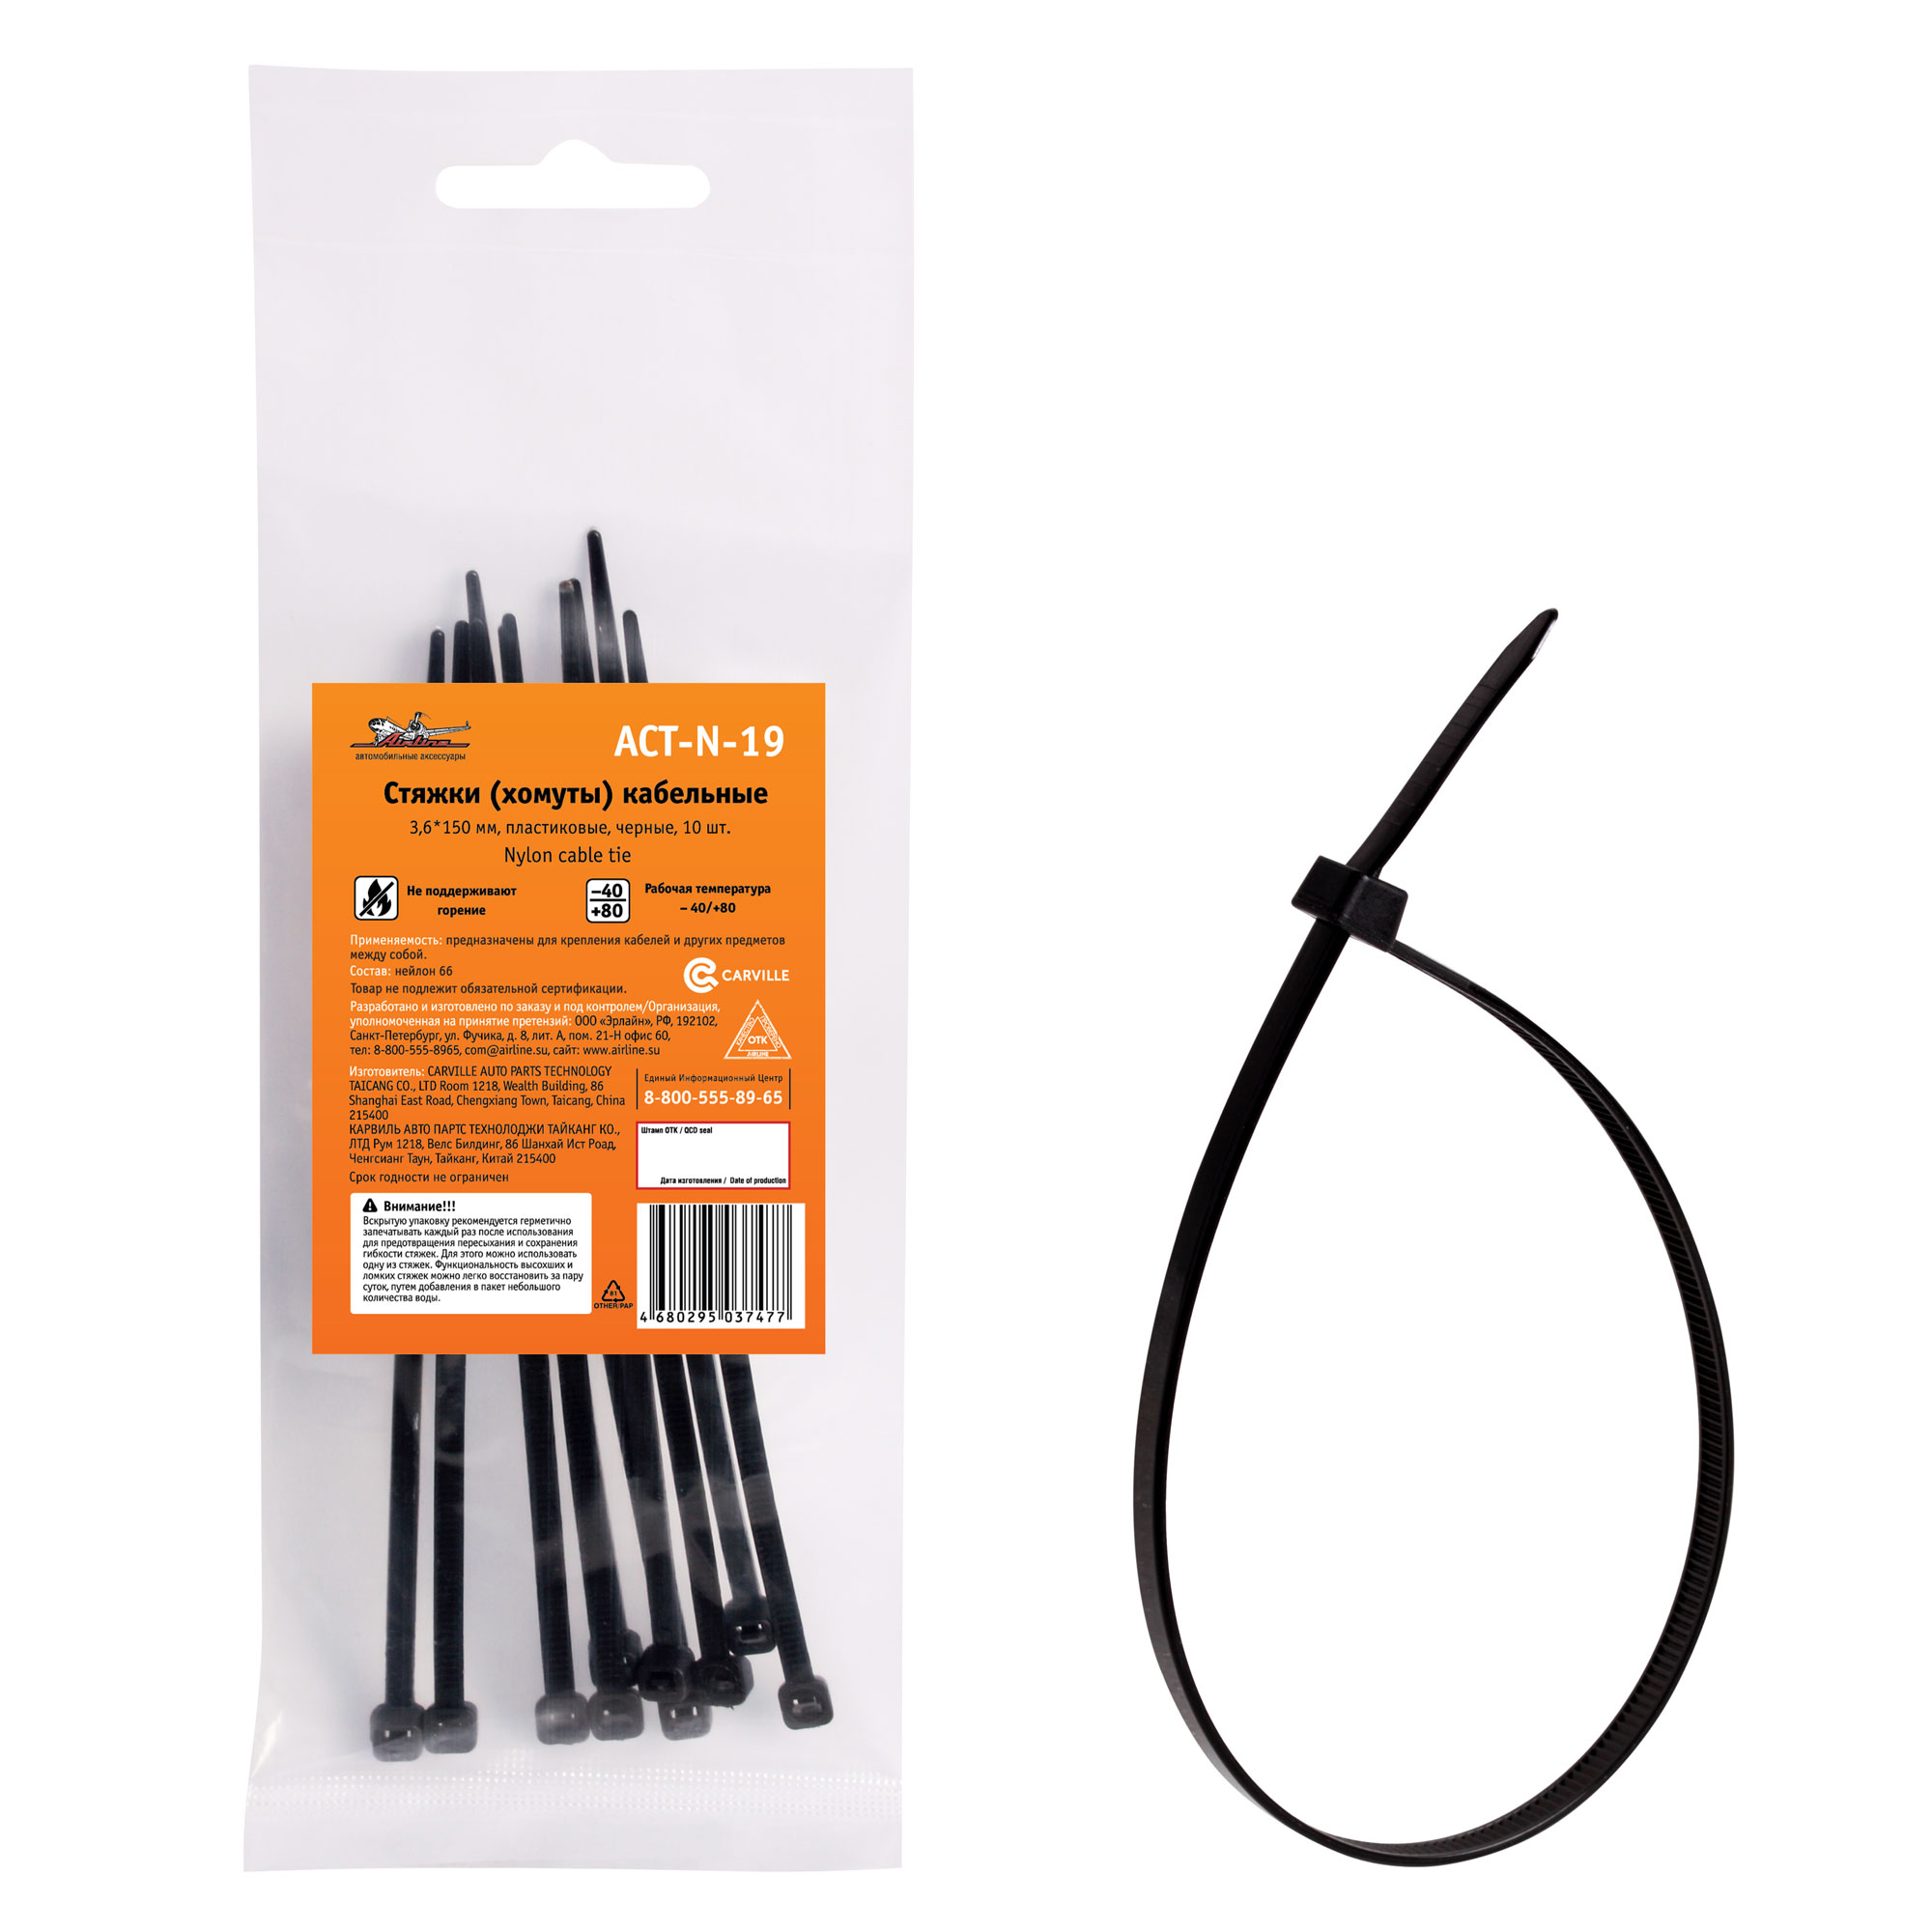 Стяжки (хомуты) кабельные 3,6*150 мм, пластиковые, черные, 10 шт. - AIRLINE ACT-N-19